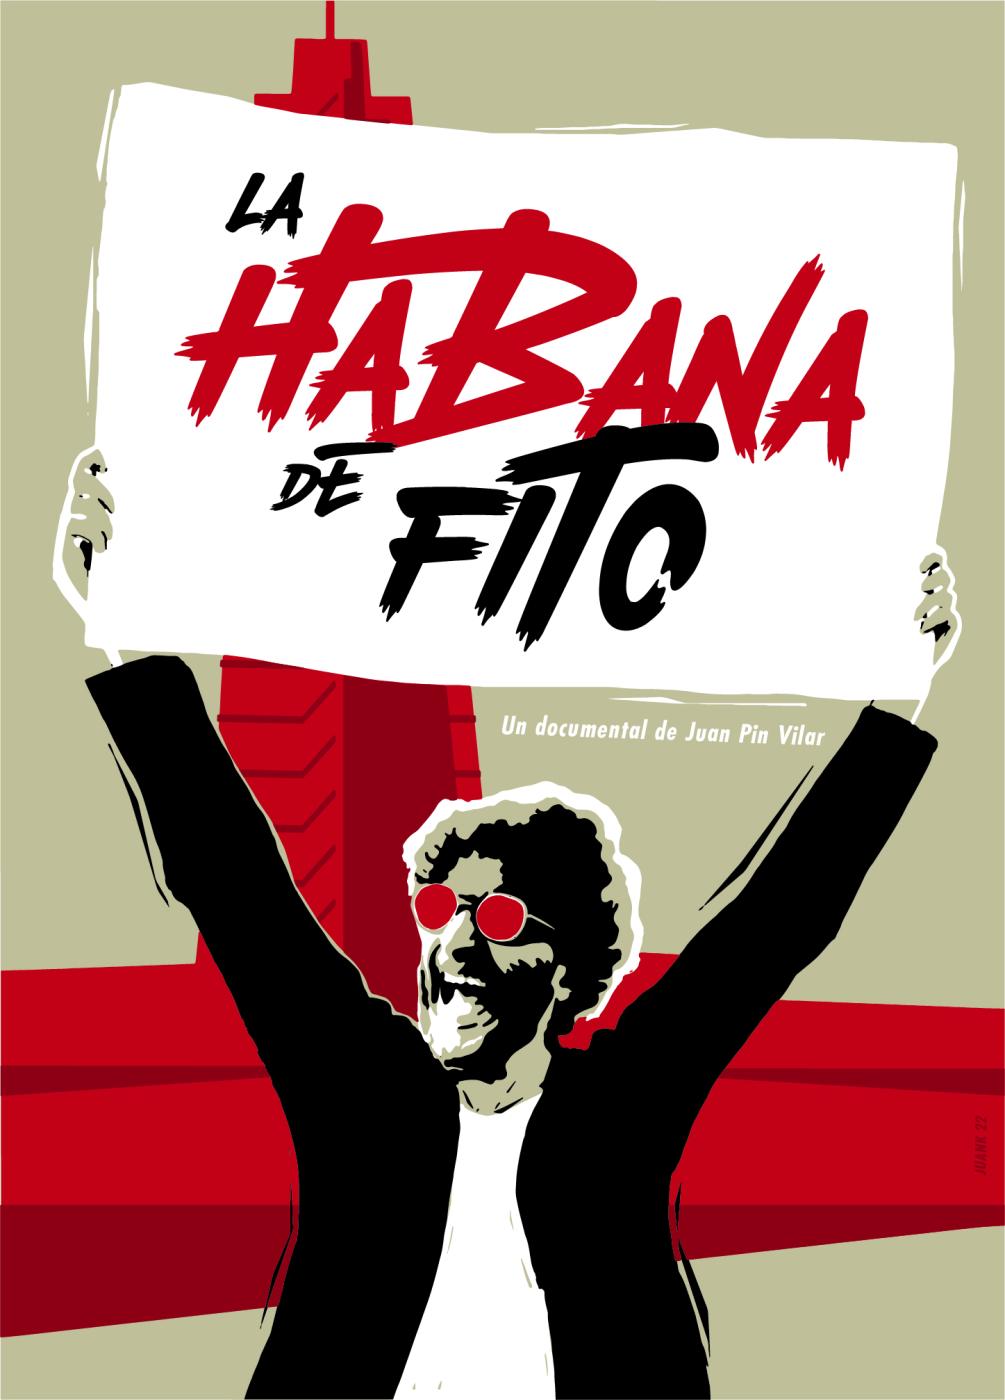 Thumbnail of Habana de Fito -Documentary Film